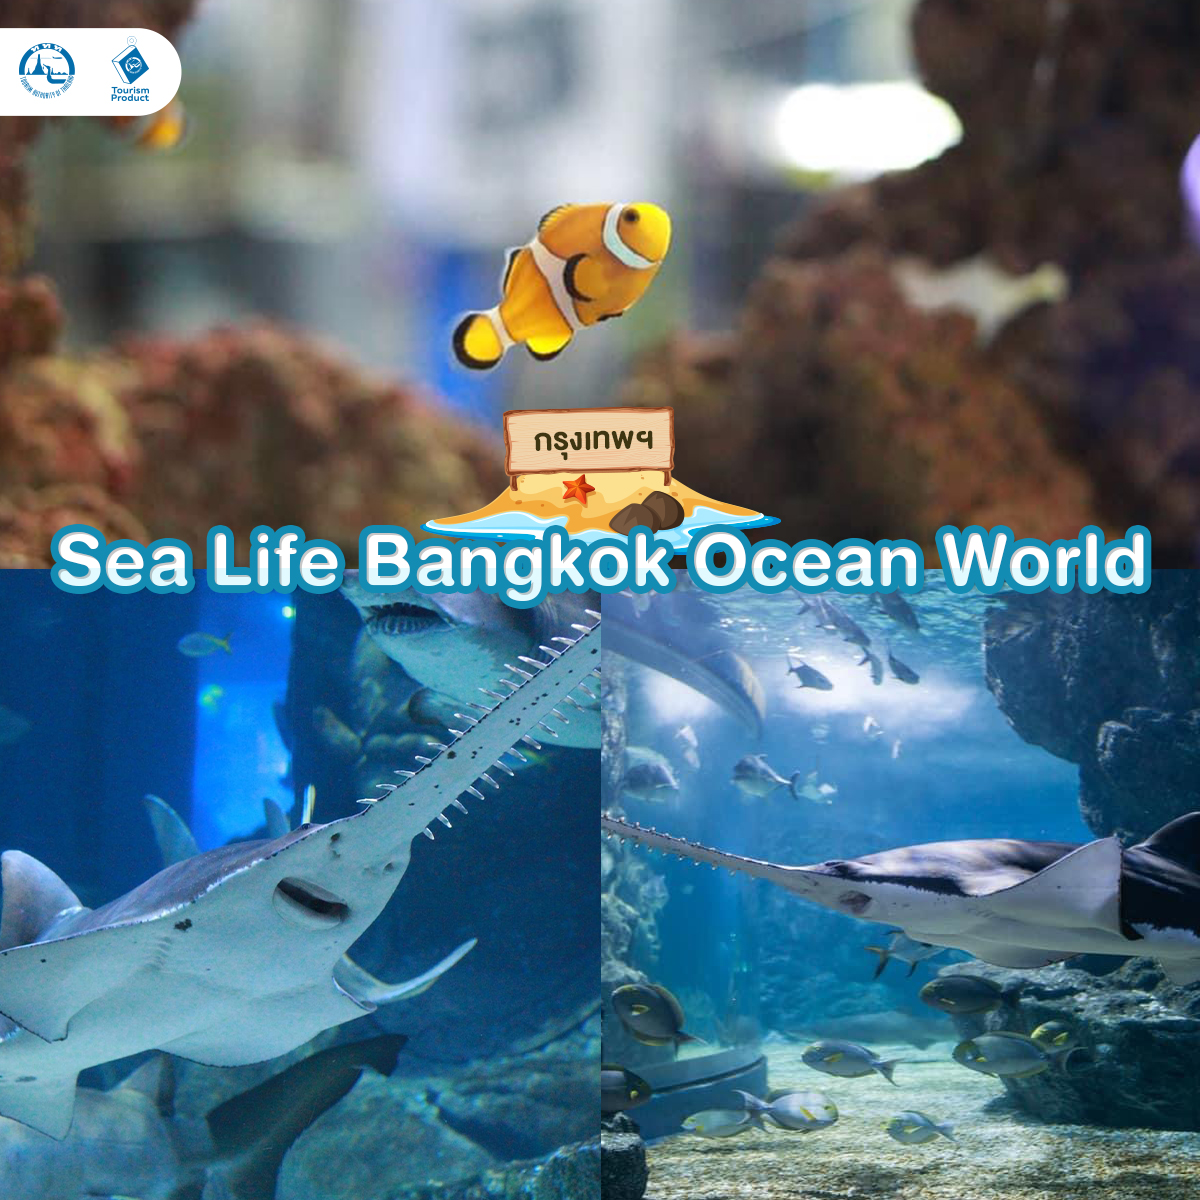 ท่องโลกใต้ทะเล 6 อควาเรียม มหัศจรรย์ใต้น้ำ Sea Life Bangkok Ocean World